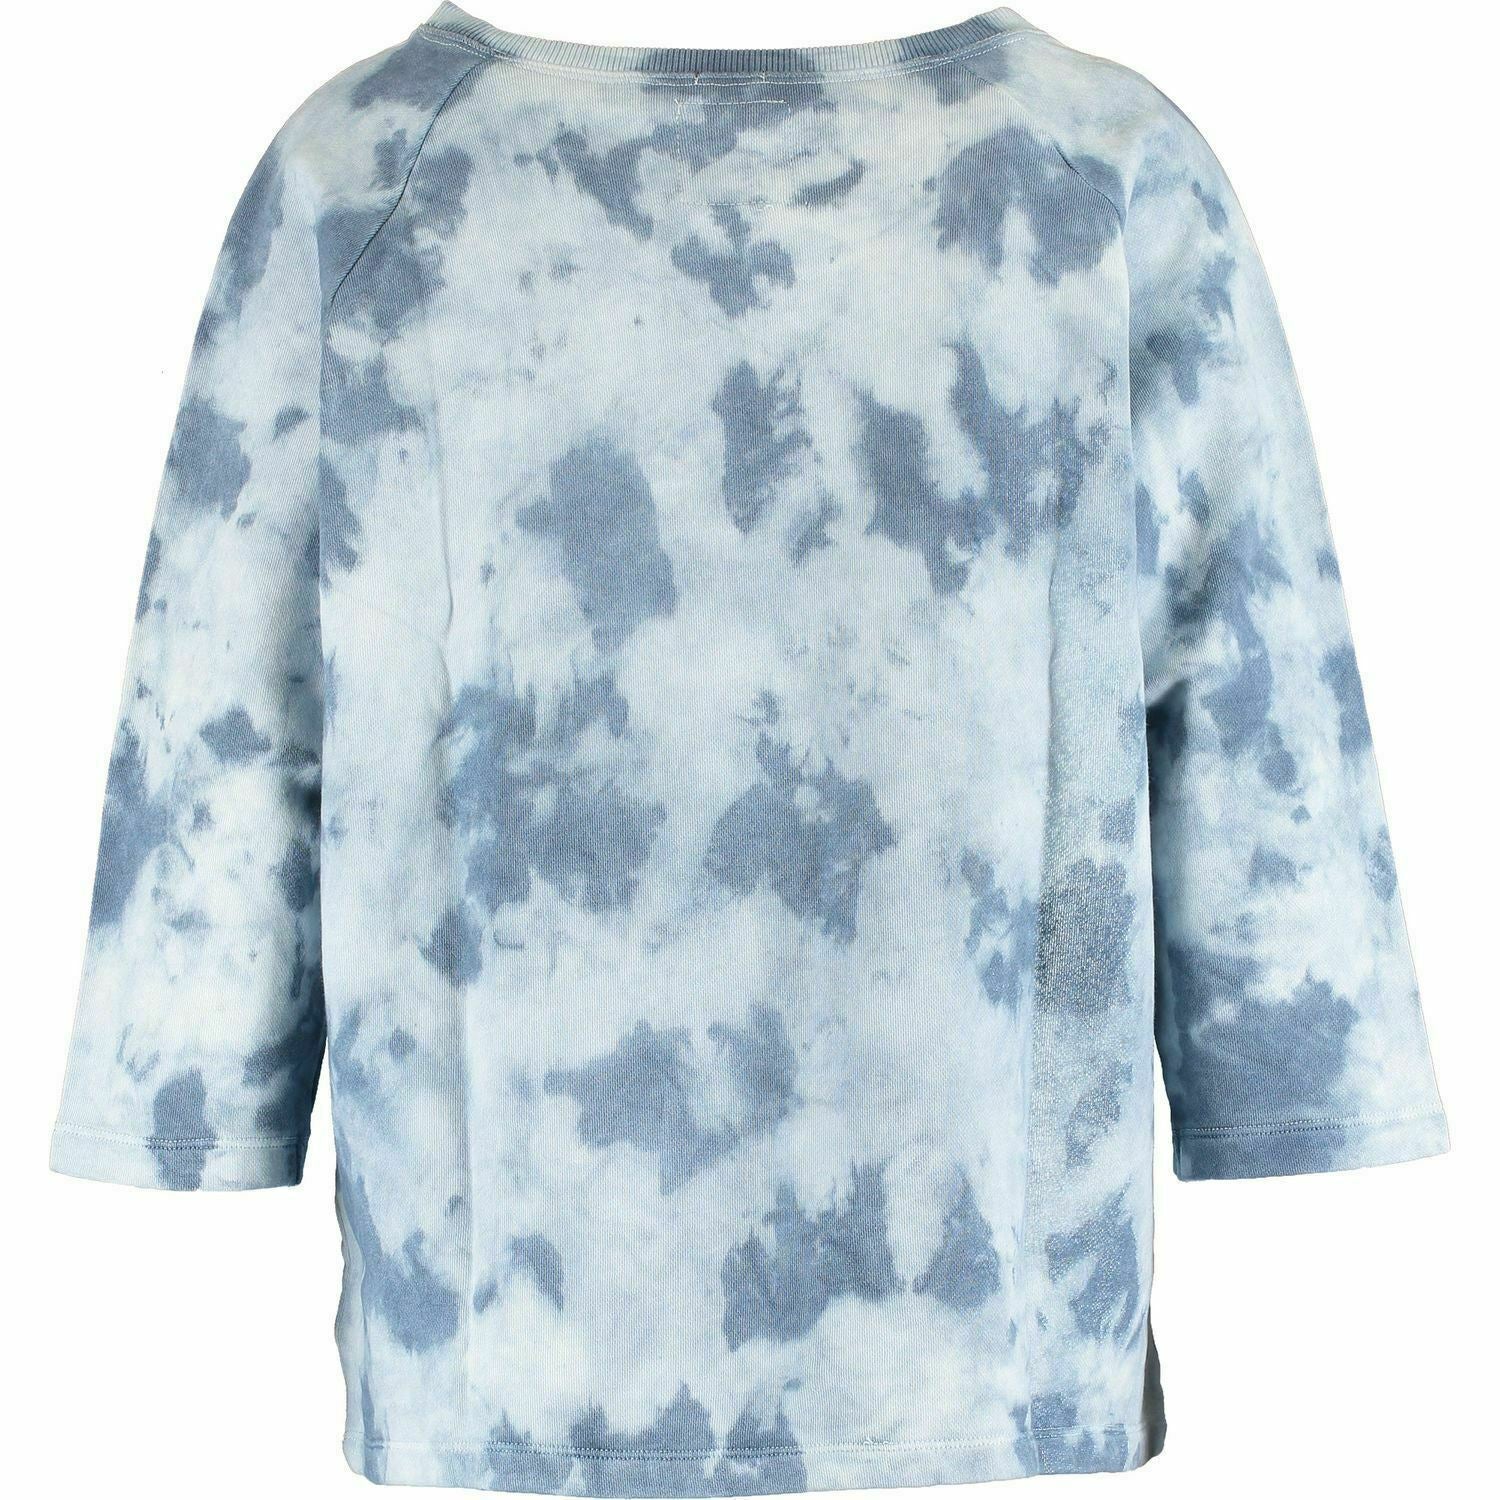 SUPERDRY Women's Washed Crop Crew Sweatshirt, Light Indigo Mist, size XS / UK 8